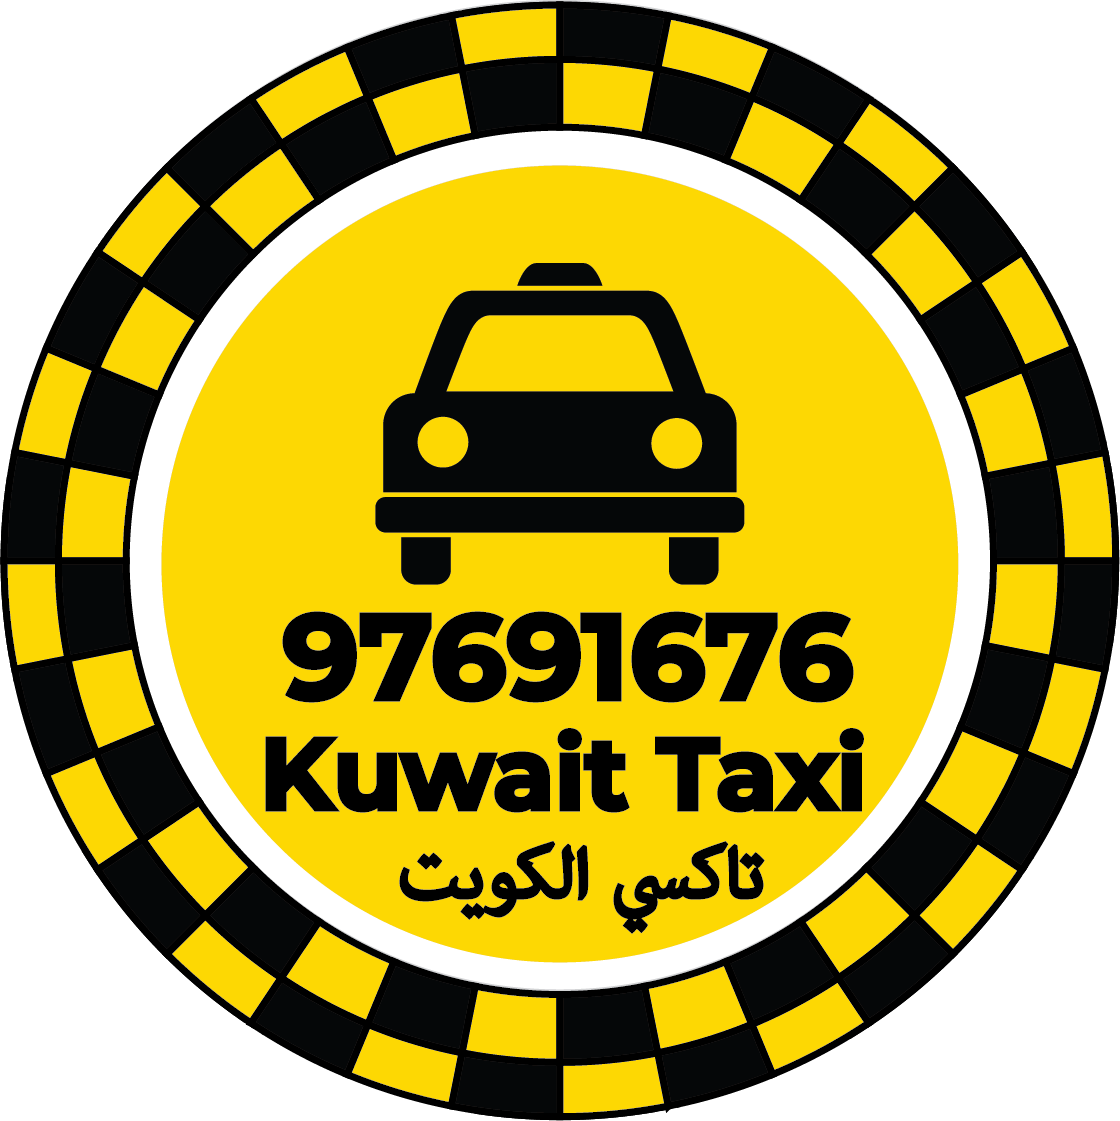 تاكسي القادسية 97691676 – ارقام تاكسي في القادسية